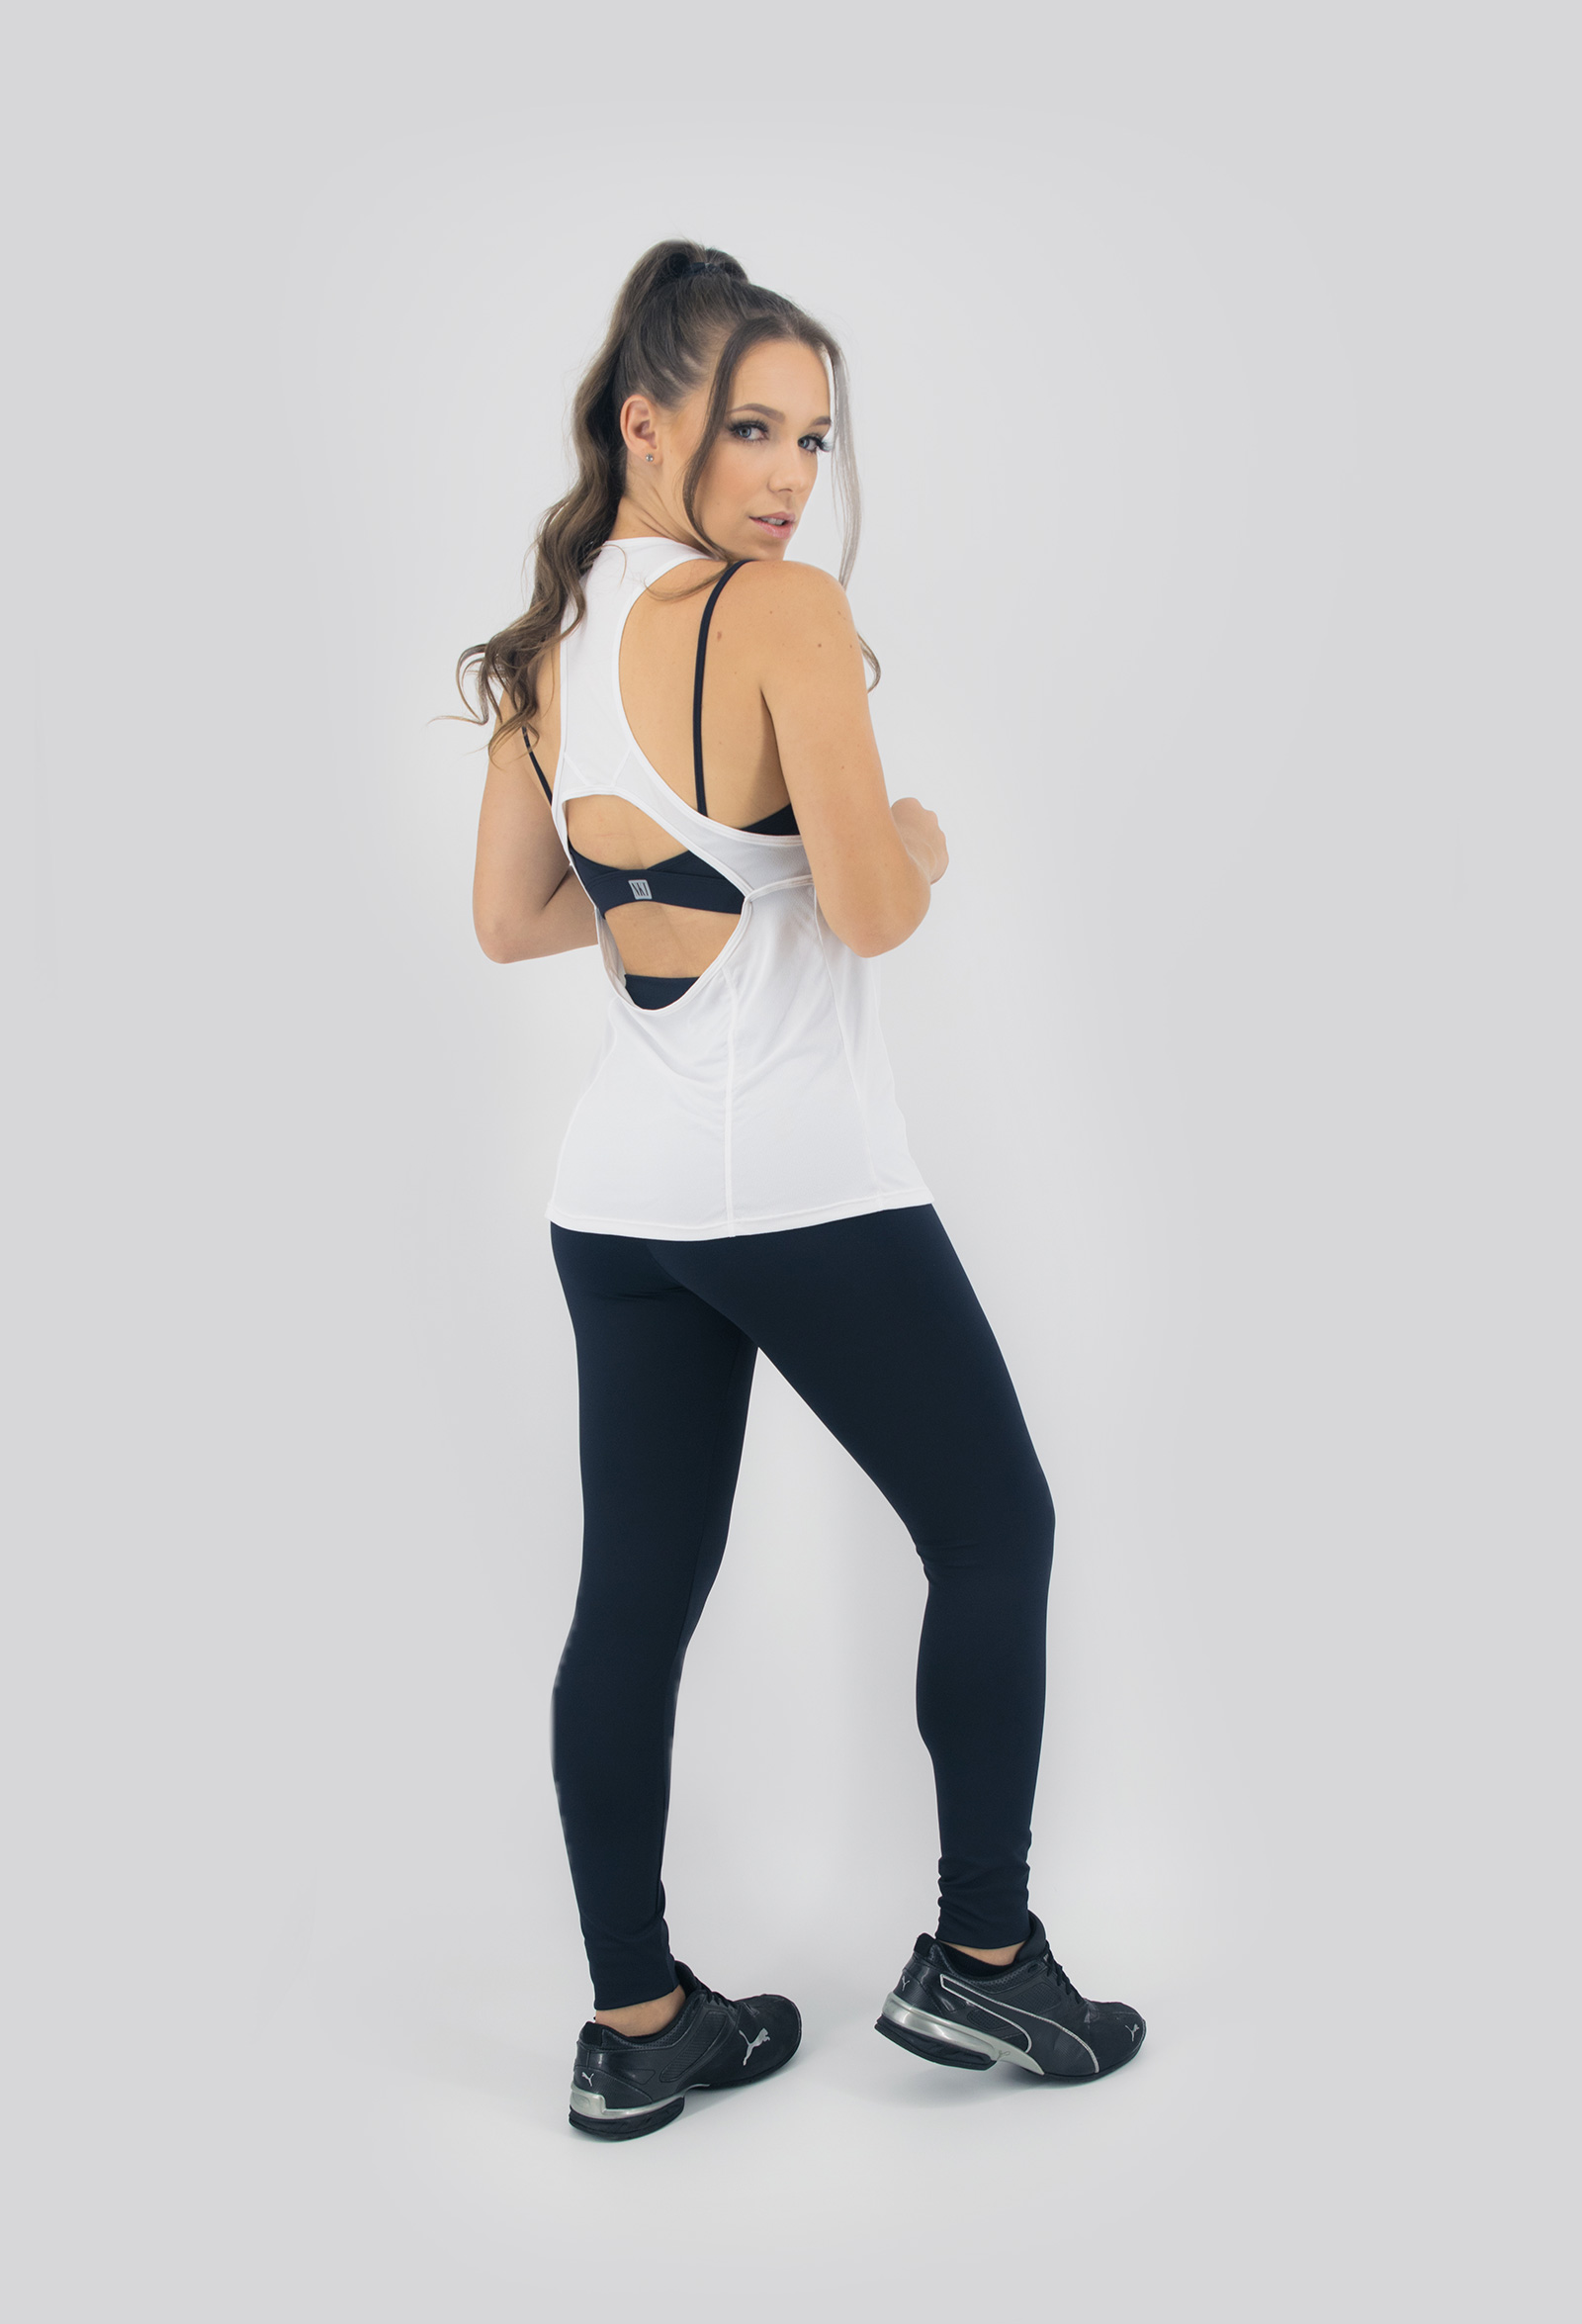 Regata Clipping Branca, Coleção Move Your Body - NKT Fitwear Moda Fitness